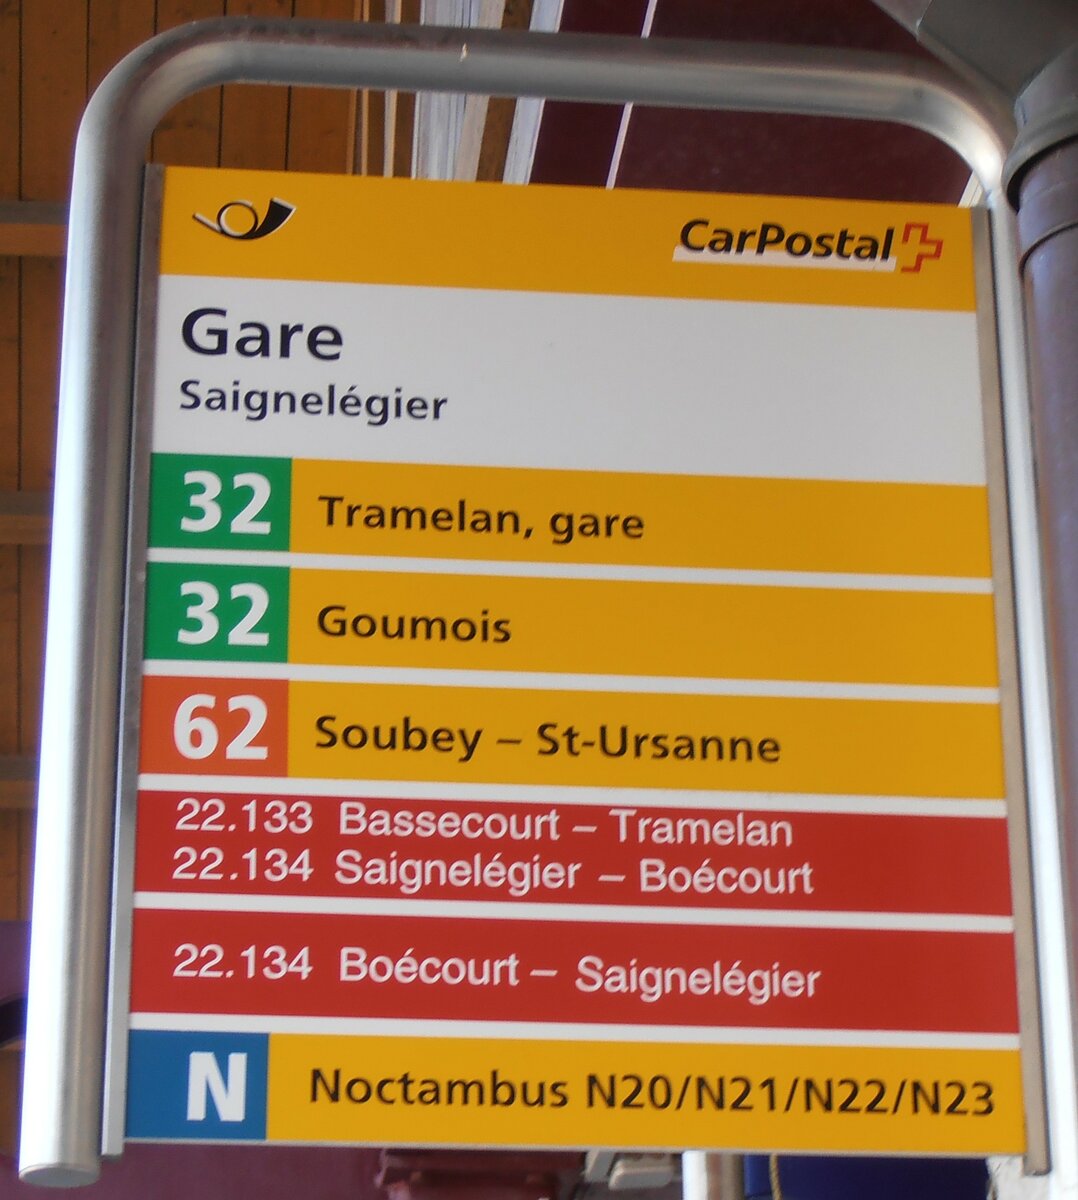 (234'061) - PostAuto/cj-Haltestellenschild - Saignelgier, Gare - am 26. Mrz 2022